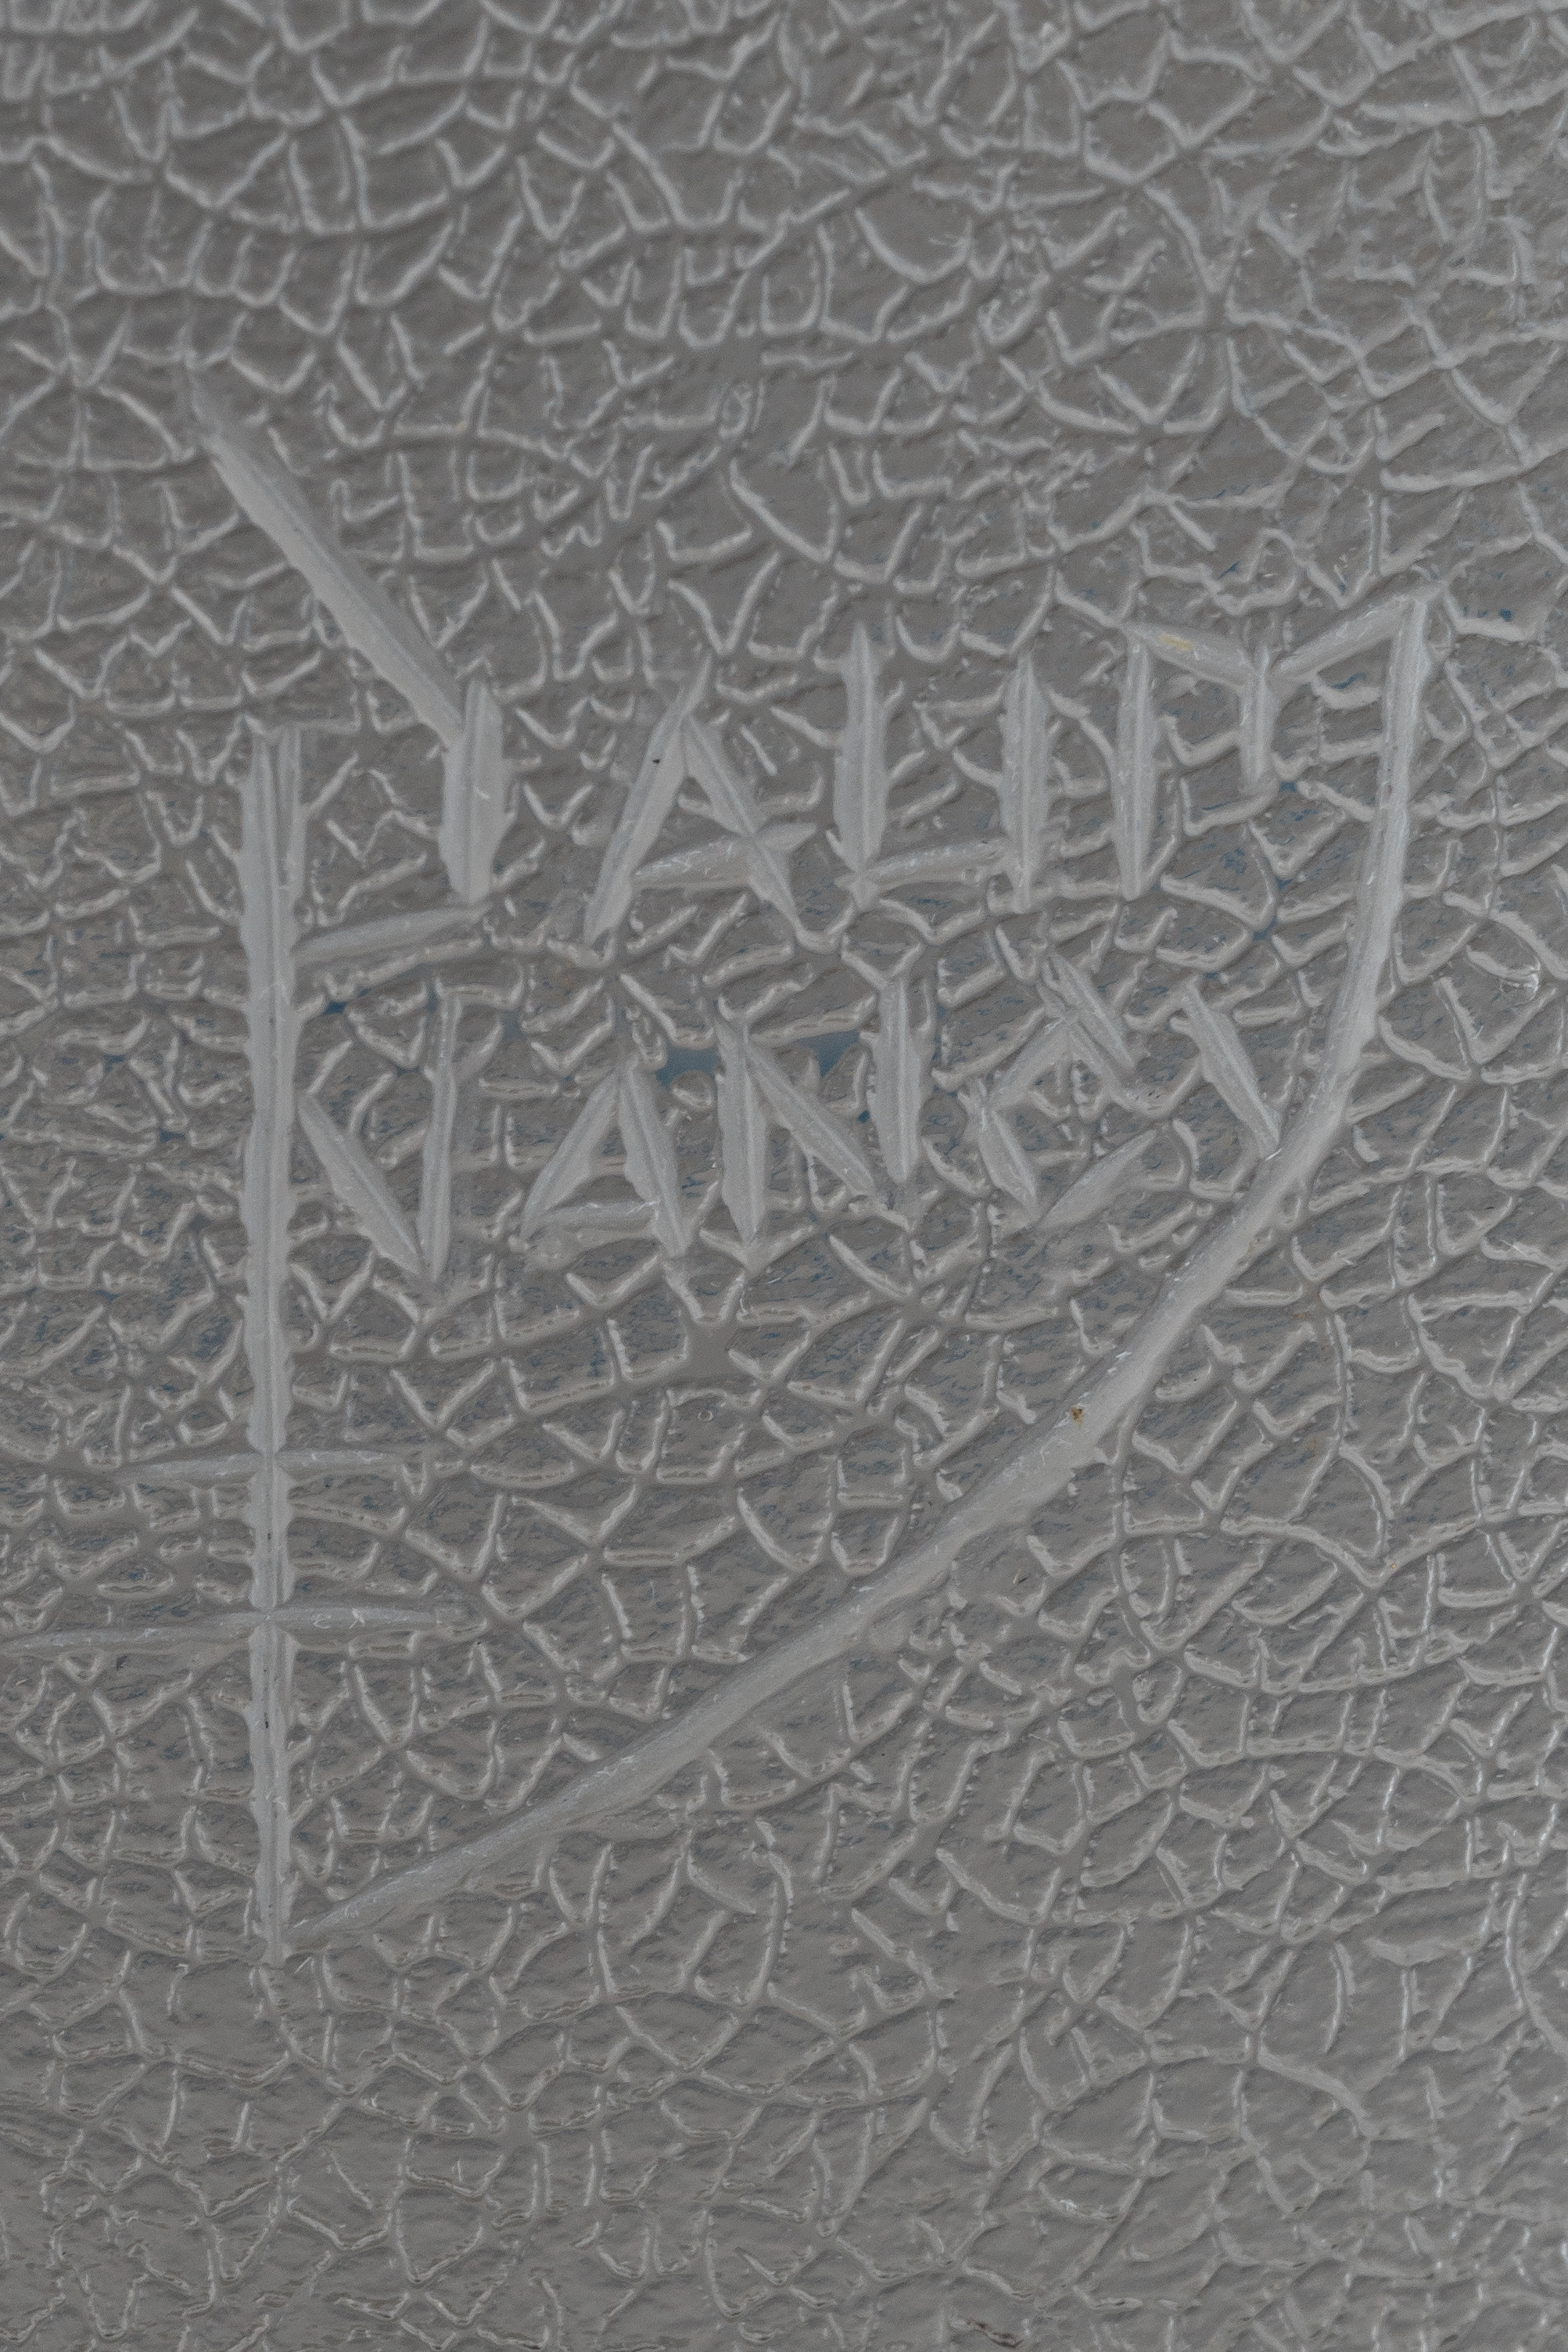 (Daum Nancy) Кувшин в стиле модерн «Стрекозы».<br>Франция, фирма Дом (Daum Nancy), 1900ые гг.